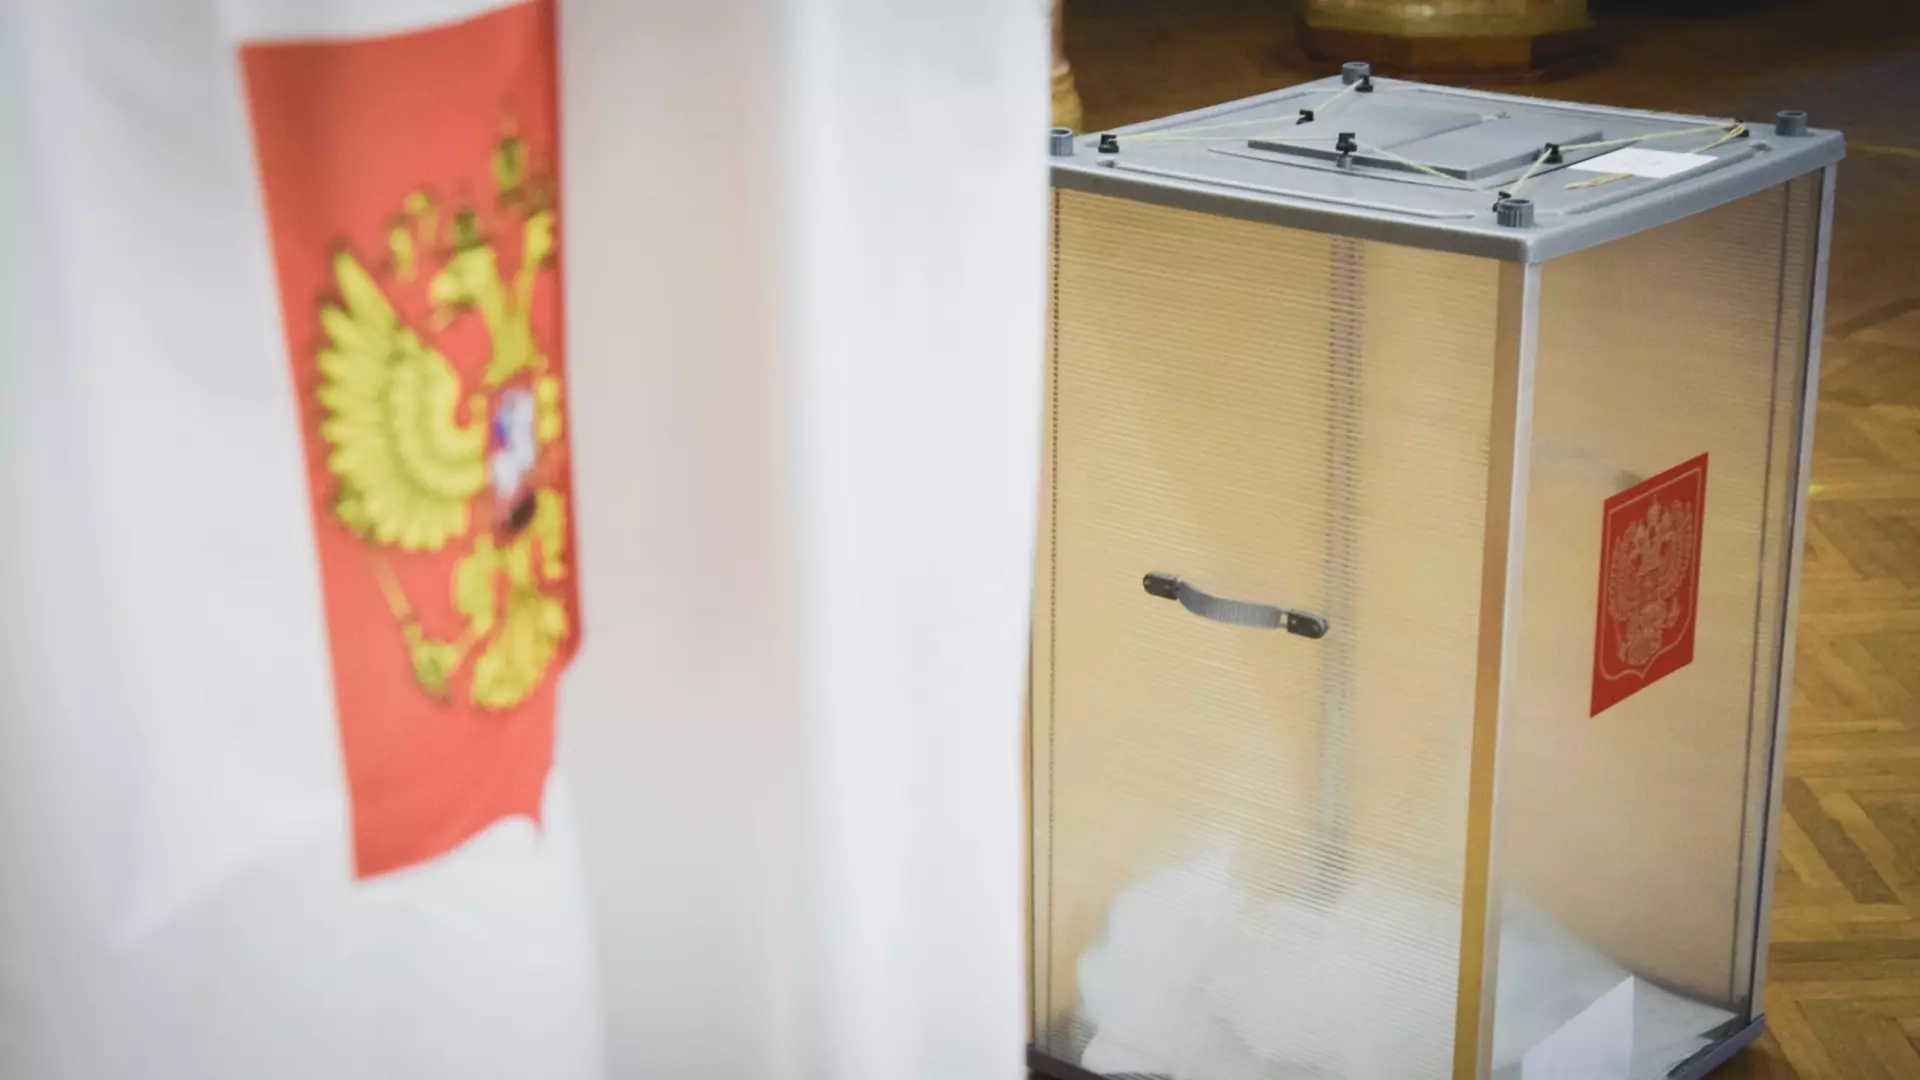 Явка на выборы президента РФ в Нижегородской области составила 59,84%